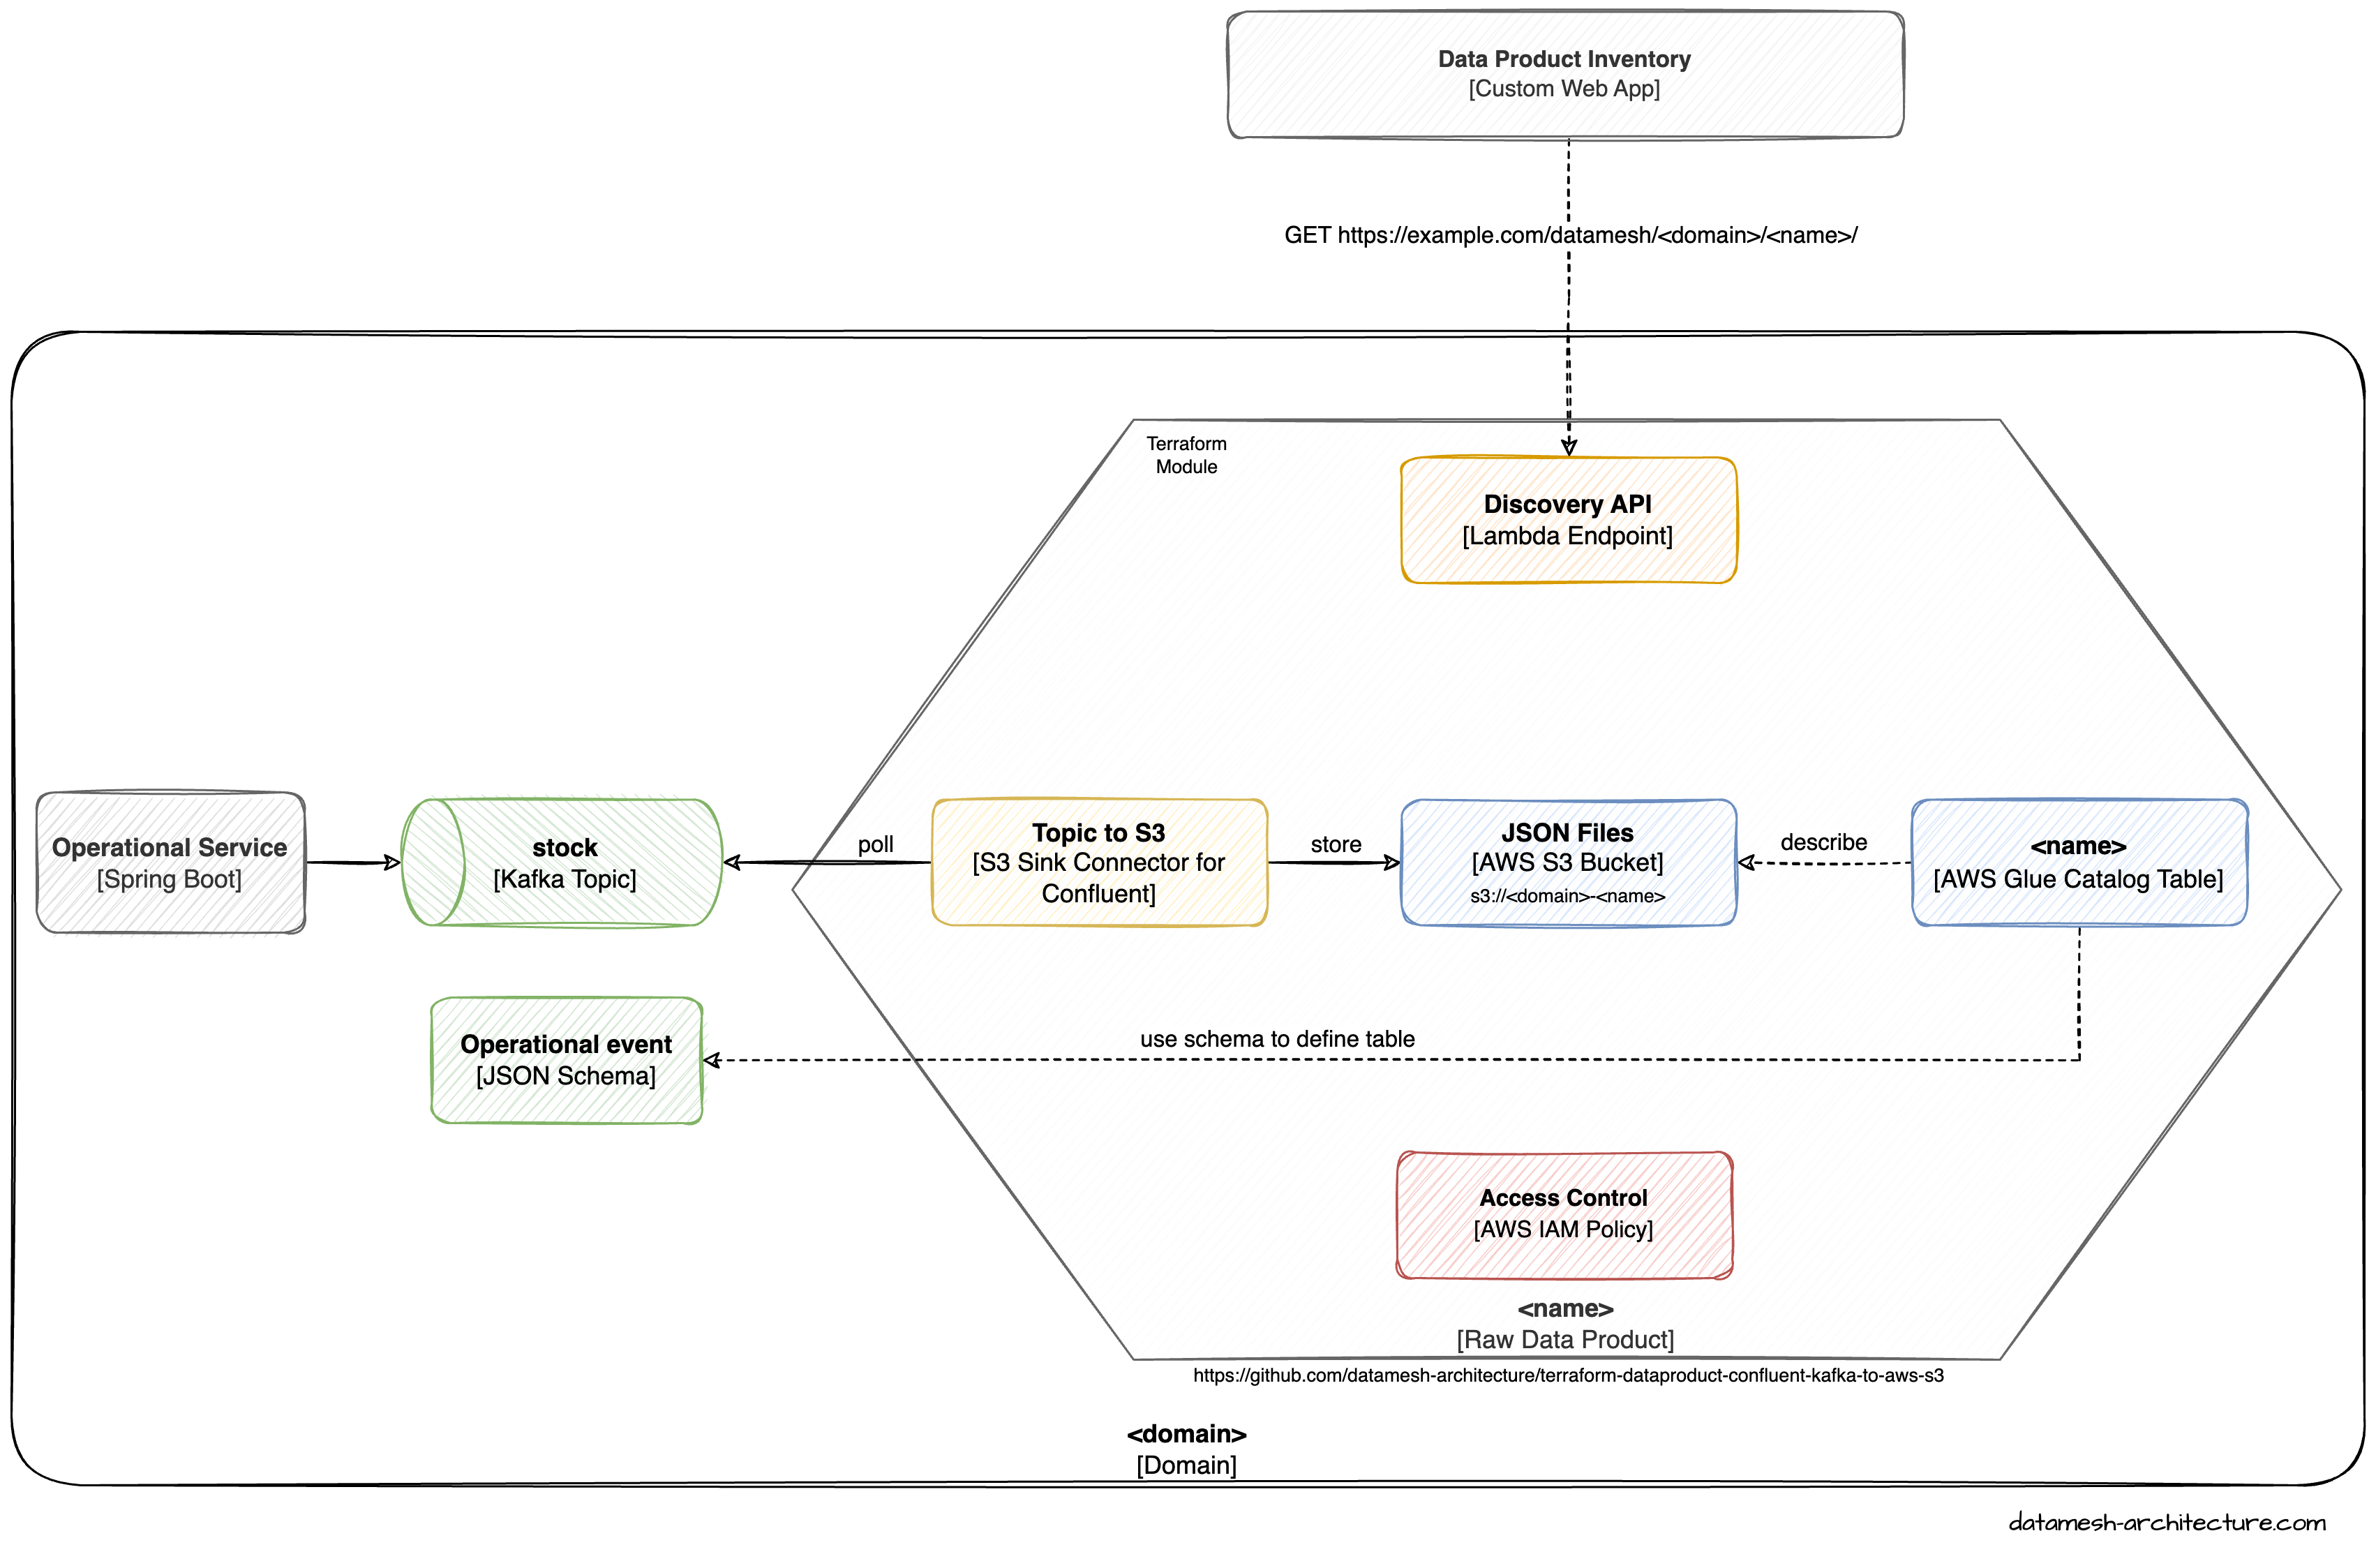 Terraform module for Confluent Kafka to AWS S3